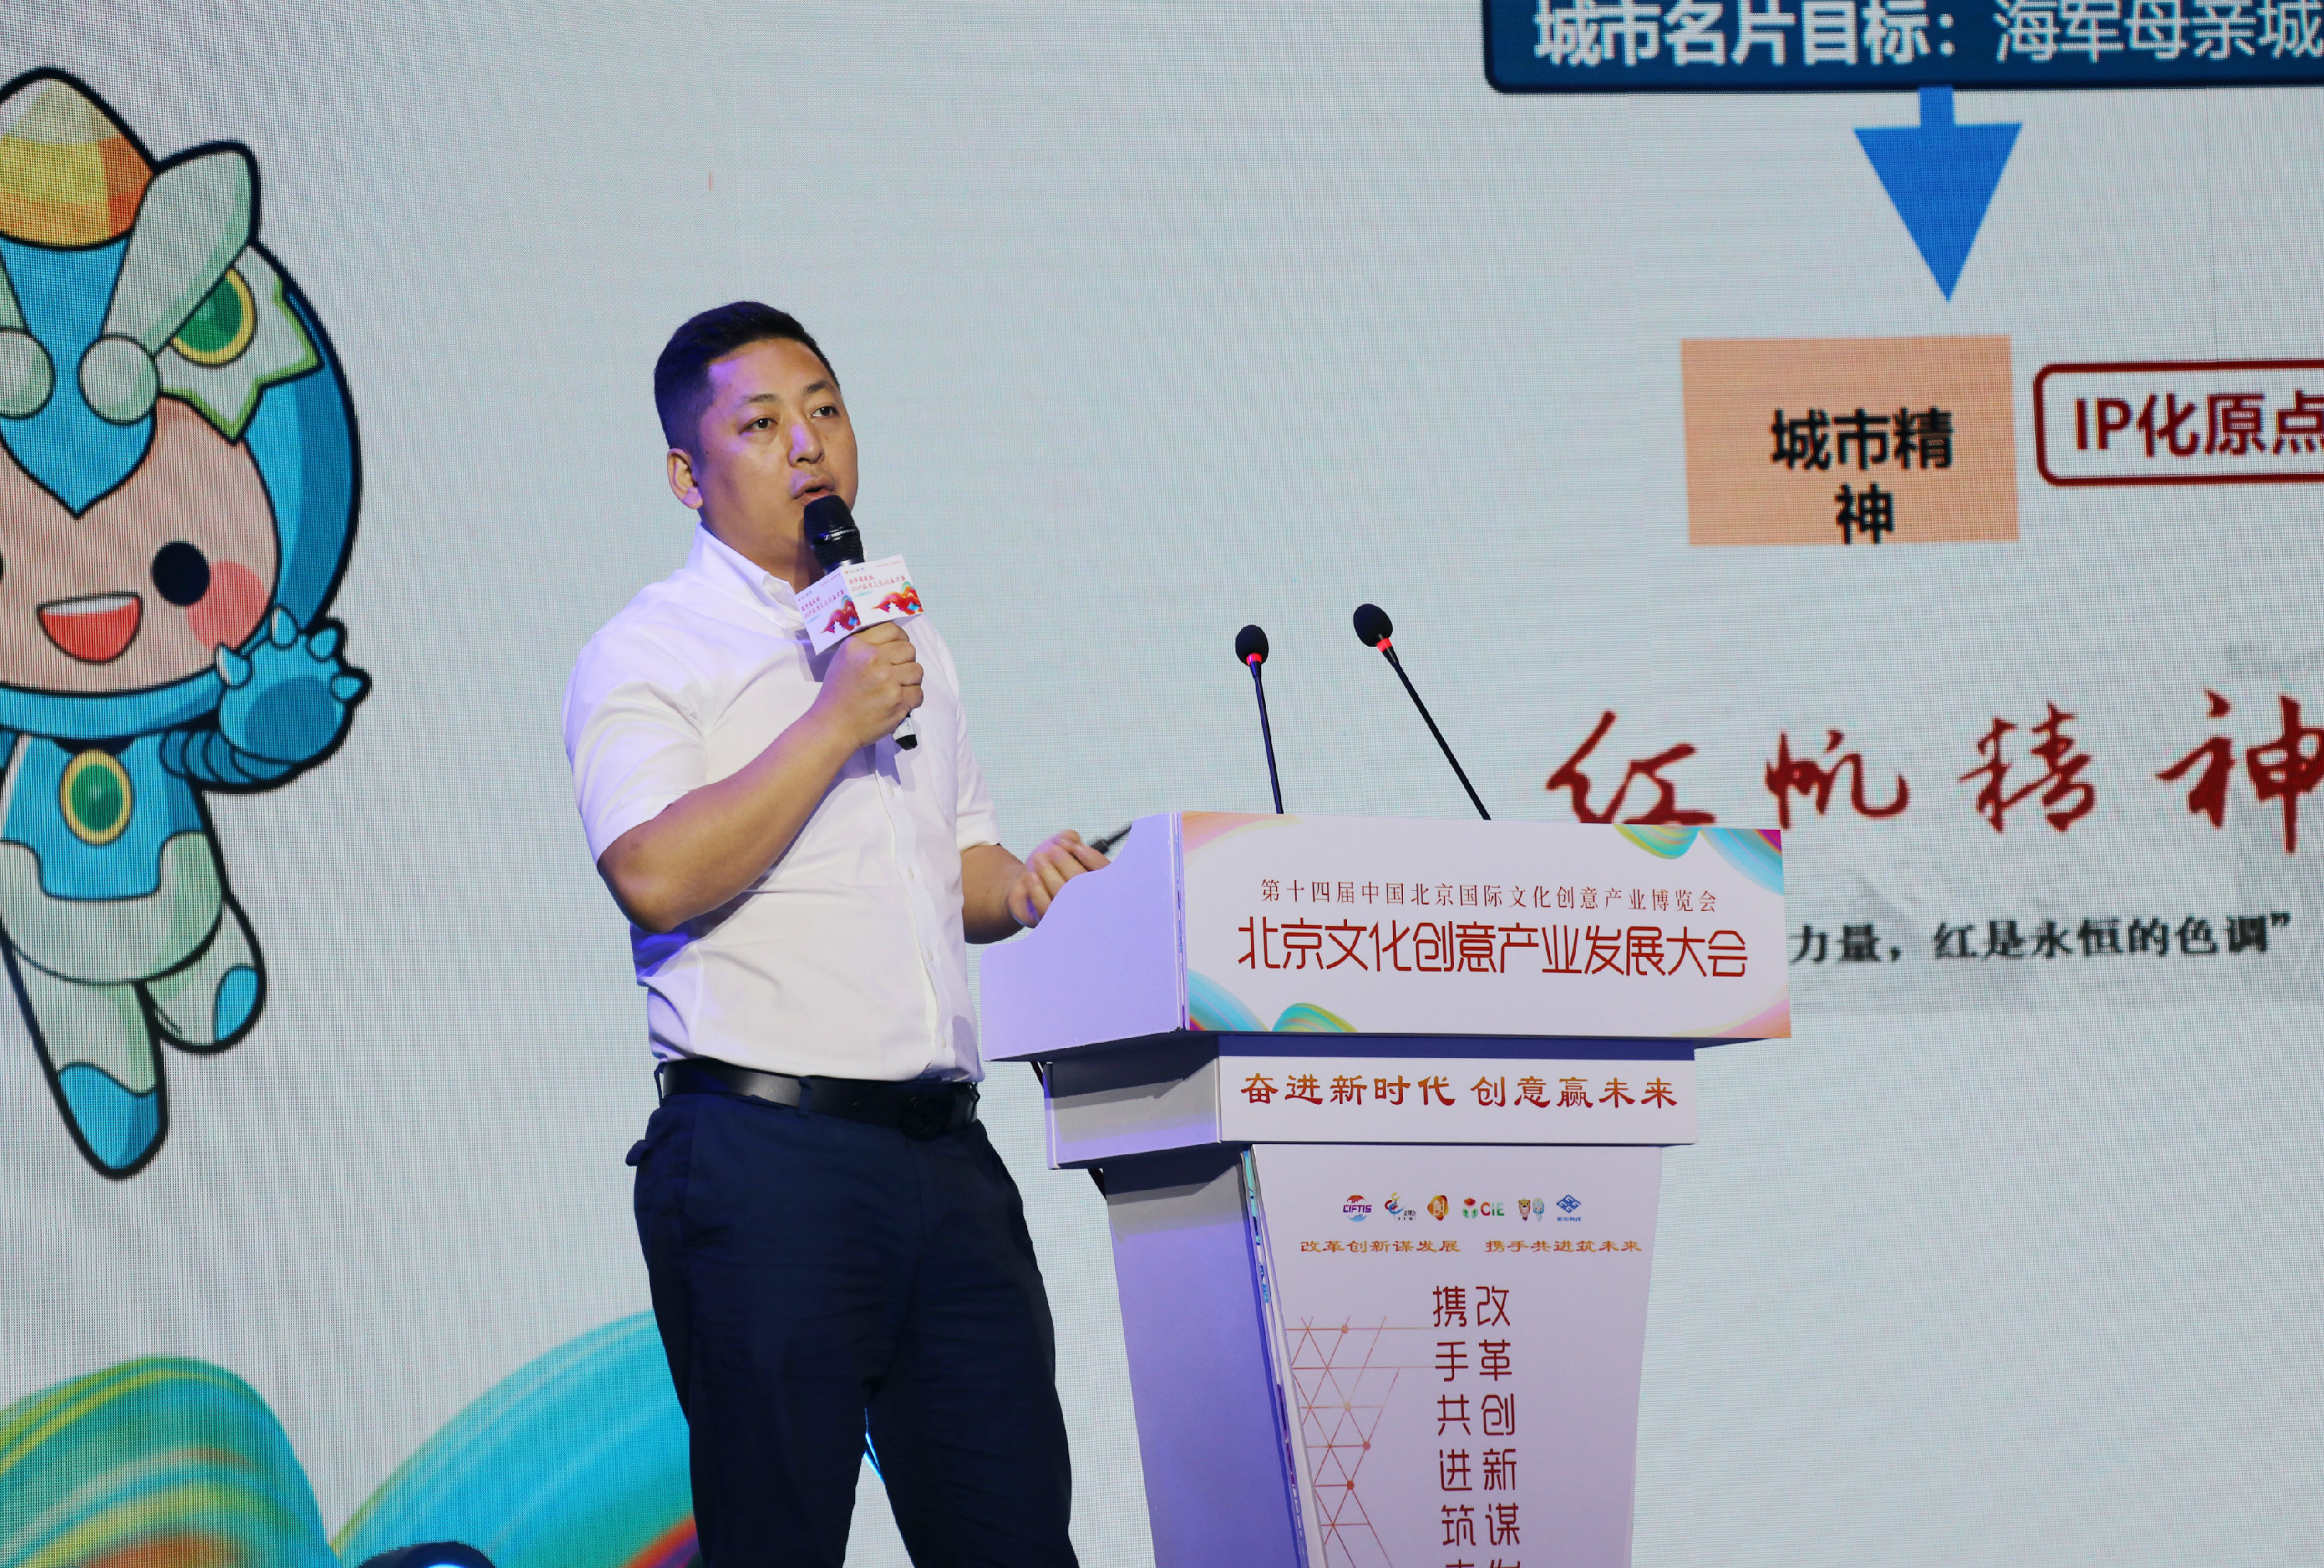 文创简讯 | 清控文创总经理朱良智受邀出席北京文化创意产业发展大会